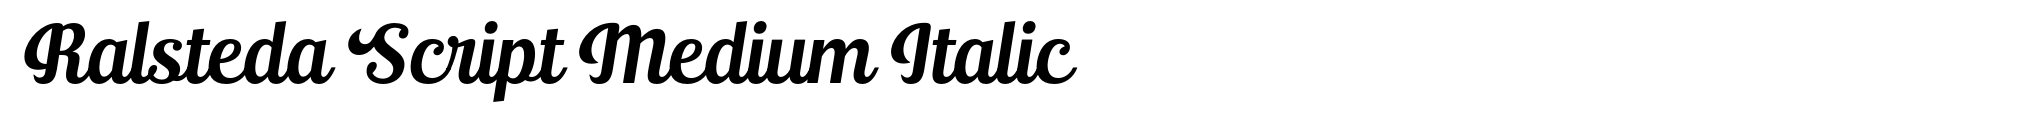 Ralsteda Script Medium Italic image